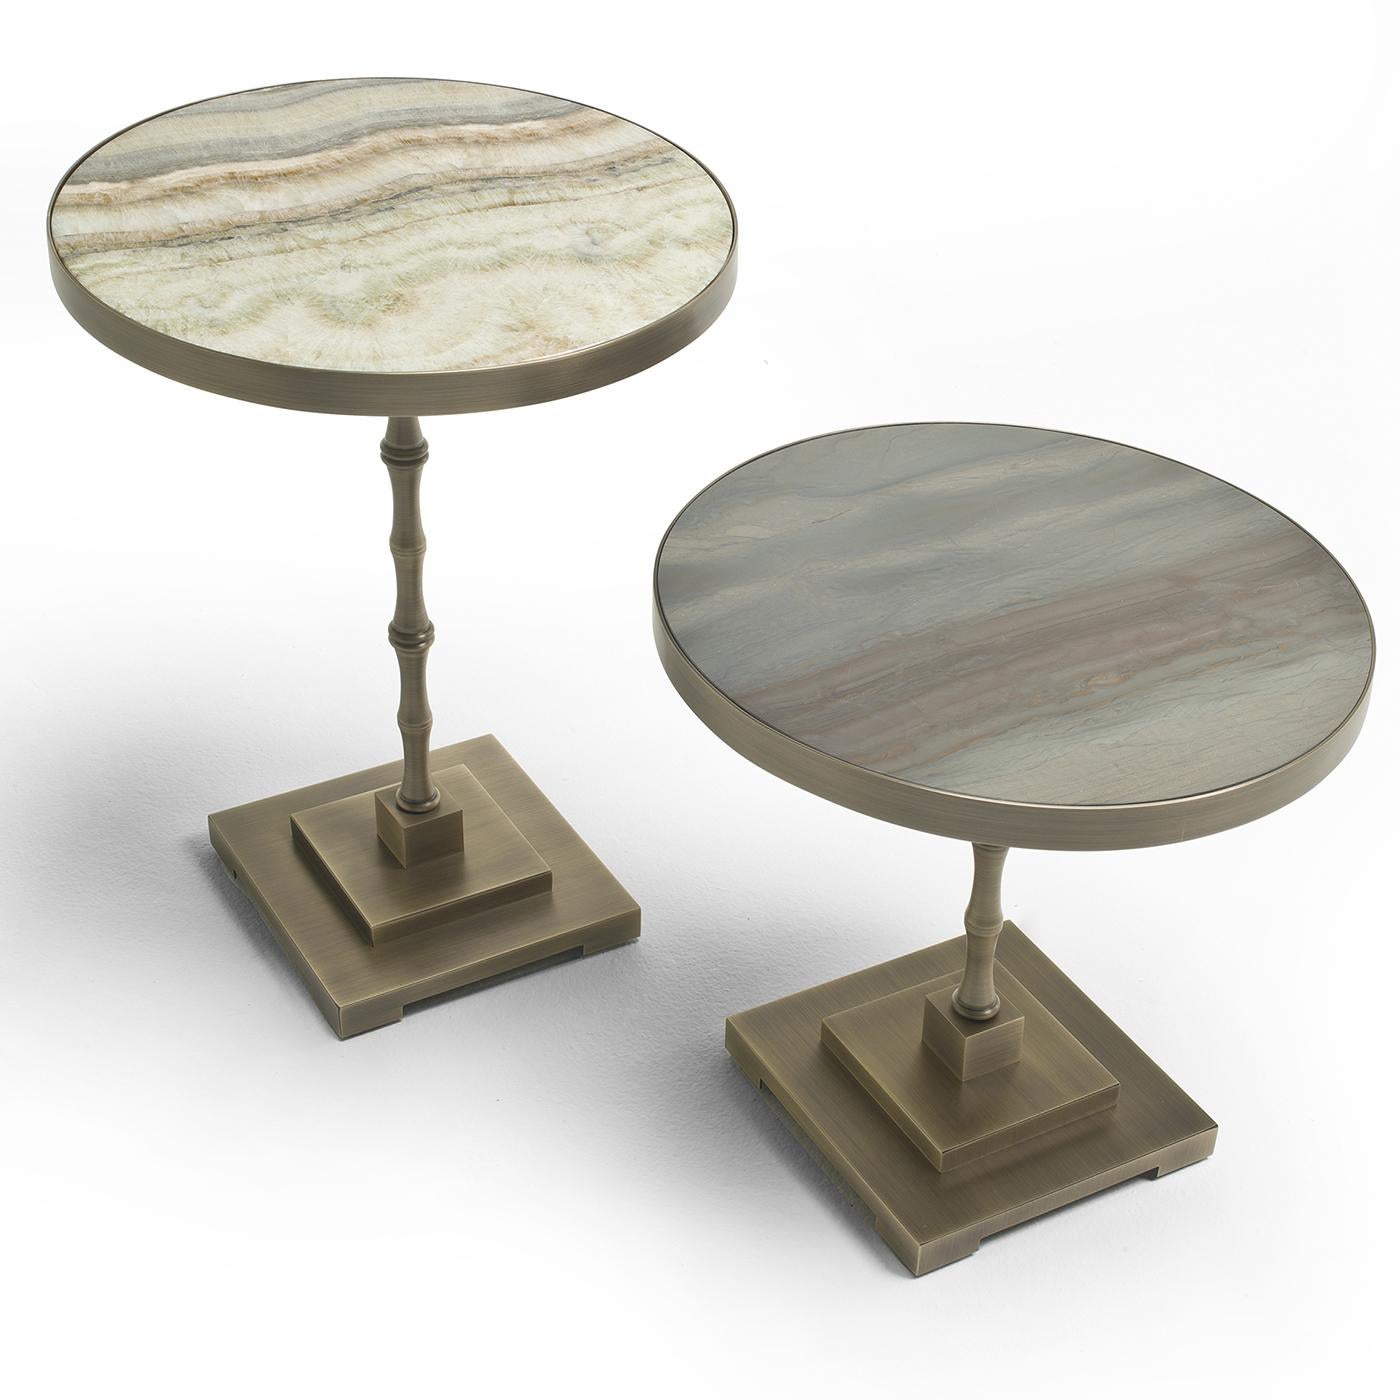 Marmor steht bei diesem originellen Beistelltisch von Fratelli Boffi im Mittelpunkt. Dieser Beistelltisch ist der kürzere der beiden Tische aus der Marmora-Kollektion und hat eine Platte aus gebürstetem Marmor. Vervollständigt wird der Tisch durch